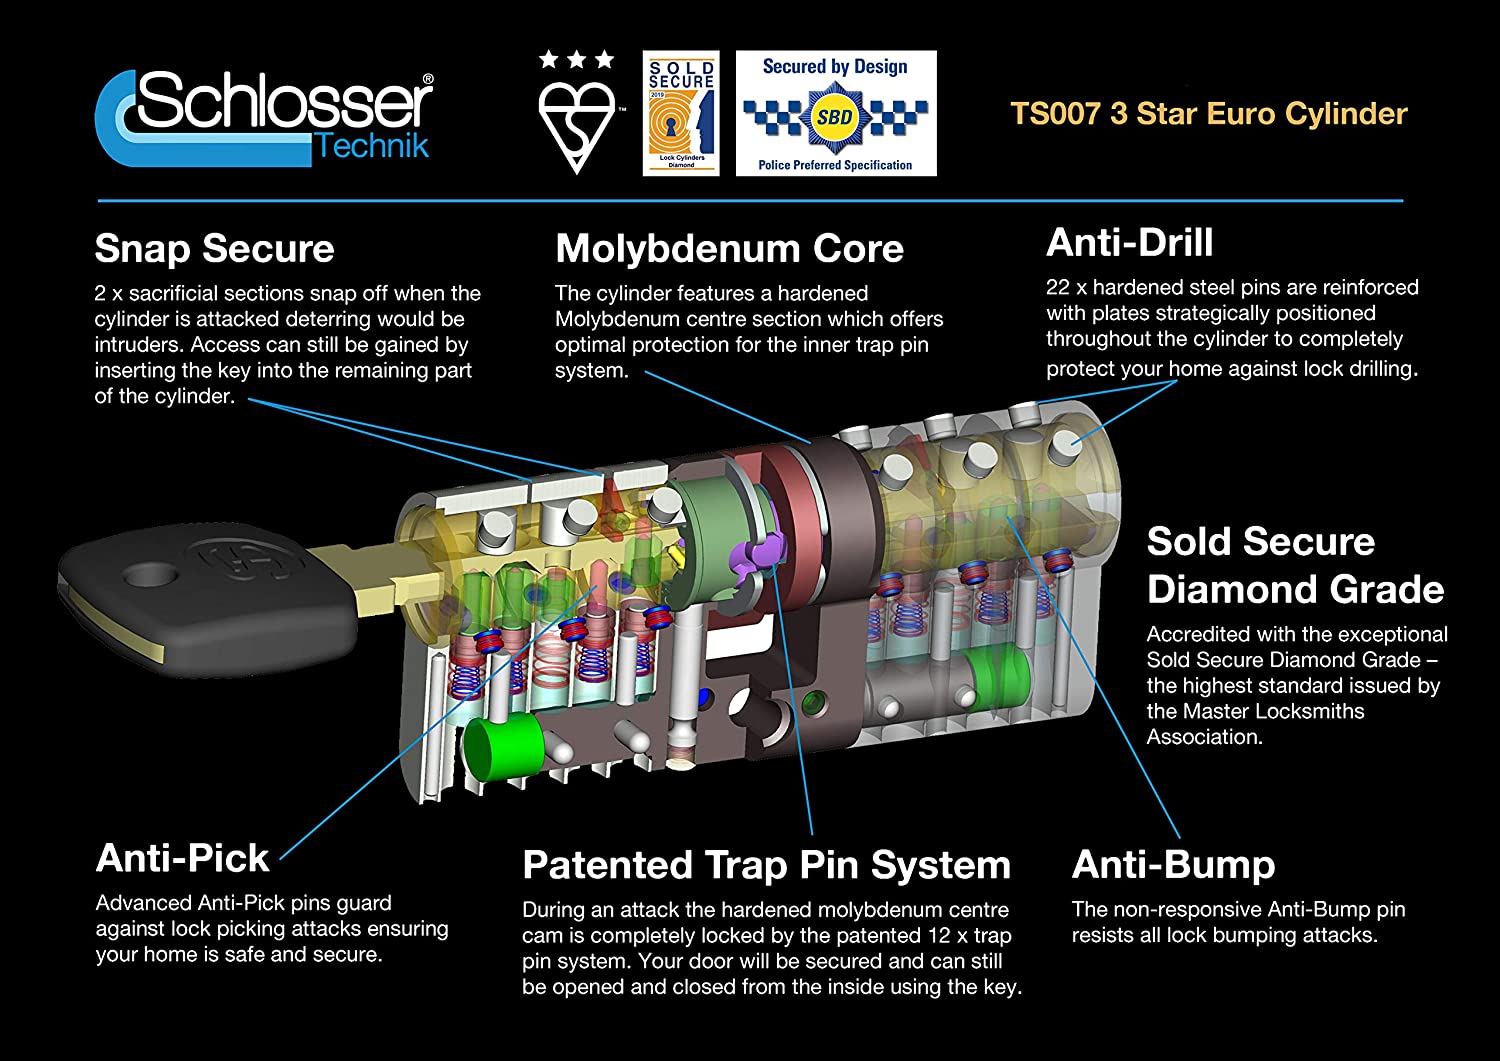 Schlosser Technik - Cilindro de alta seguridad TS007 - Cerraduras